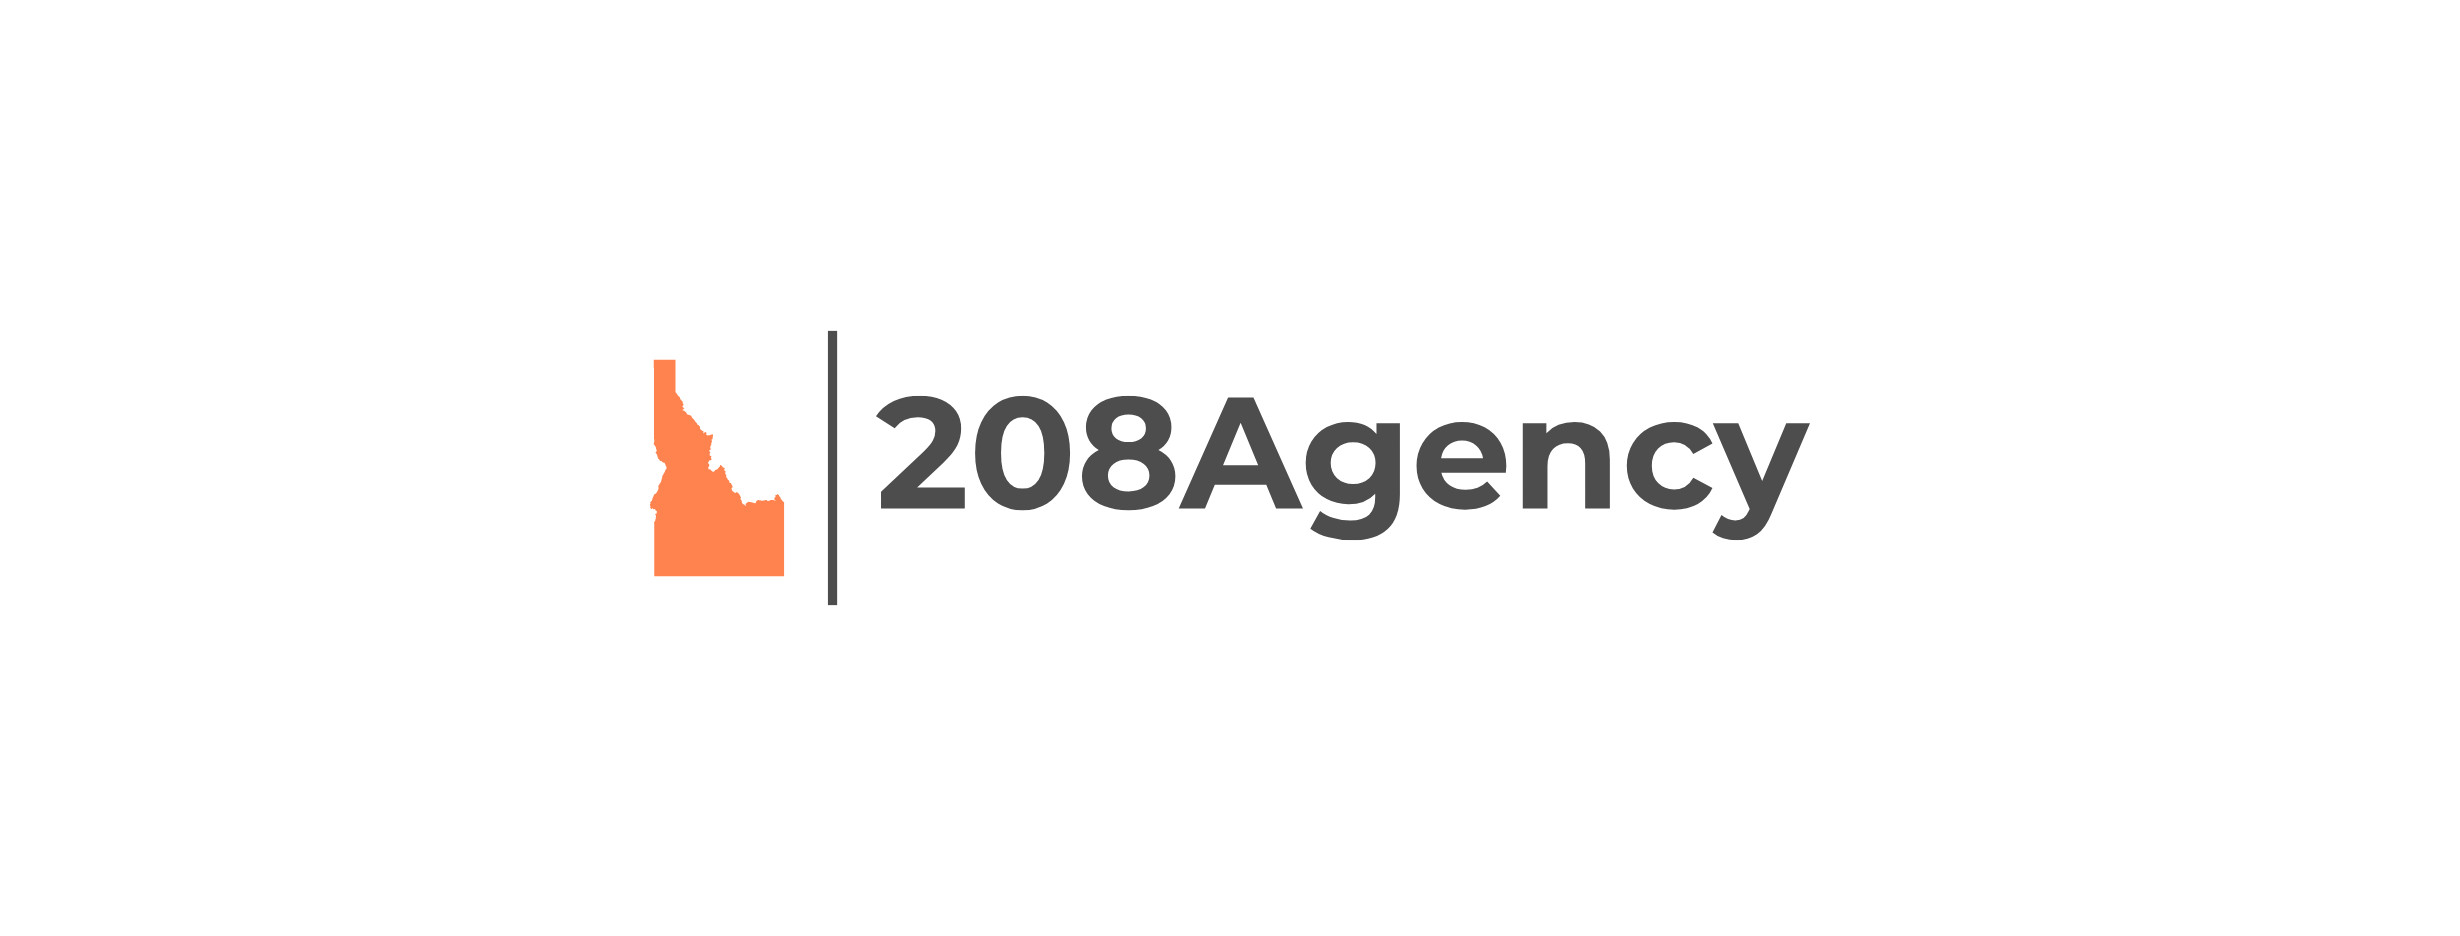 The208Agency Logo